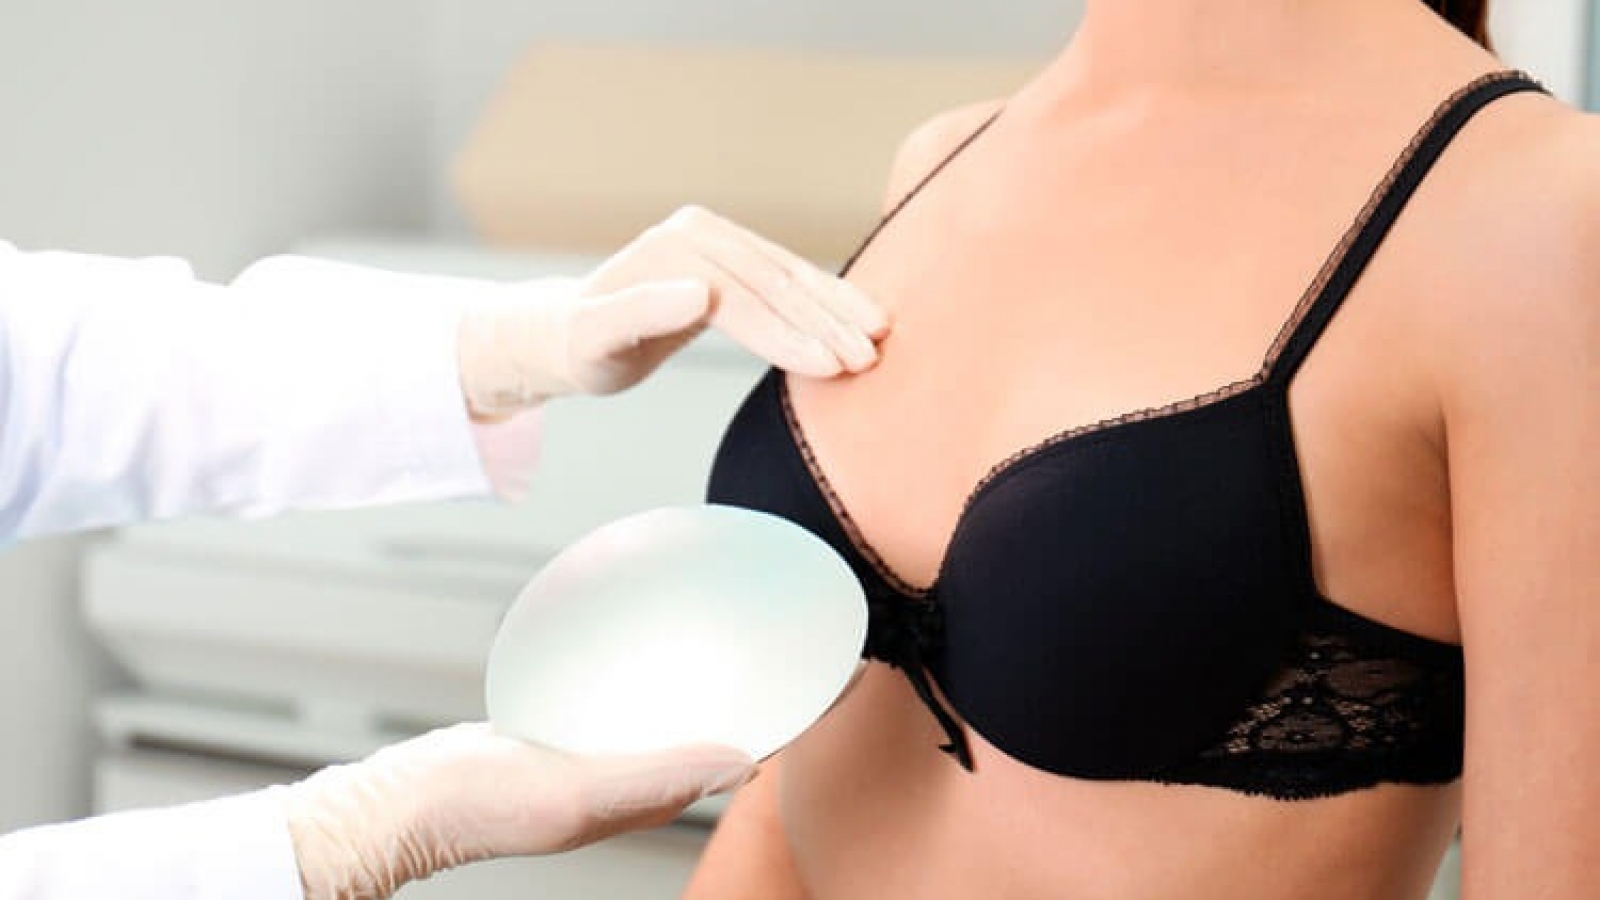 clinica de cirurgia plastica em santos dra ana lucia lemos assemetria das mamas